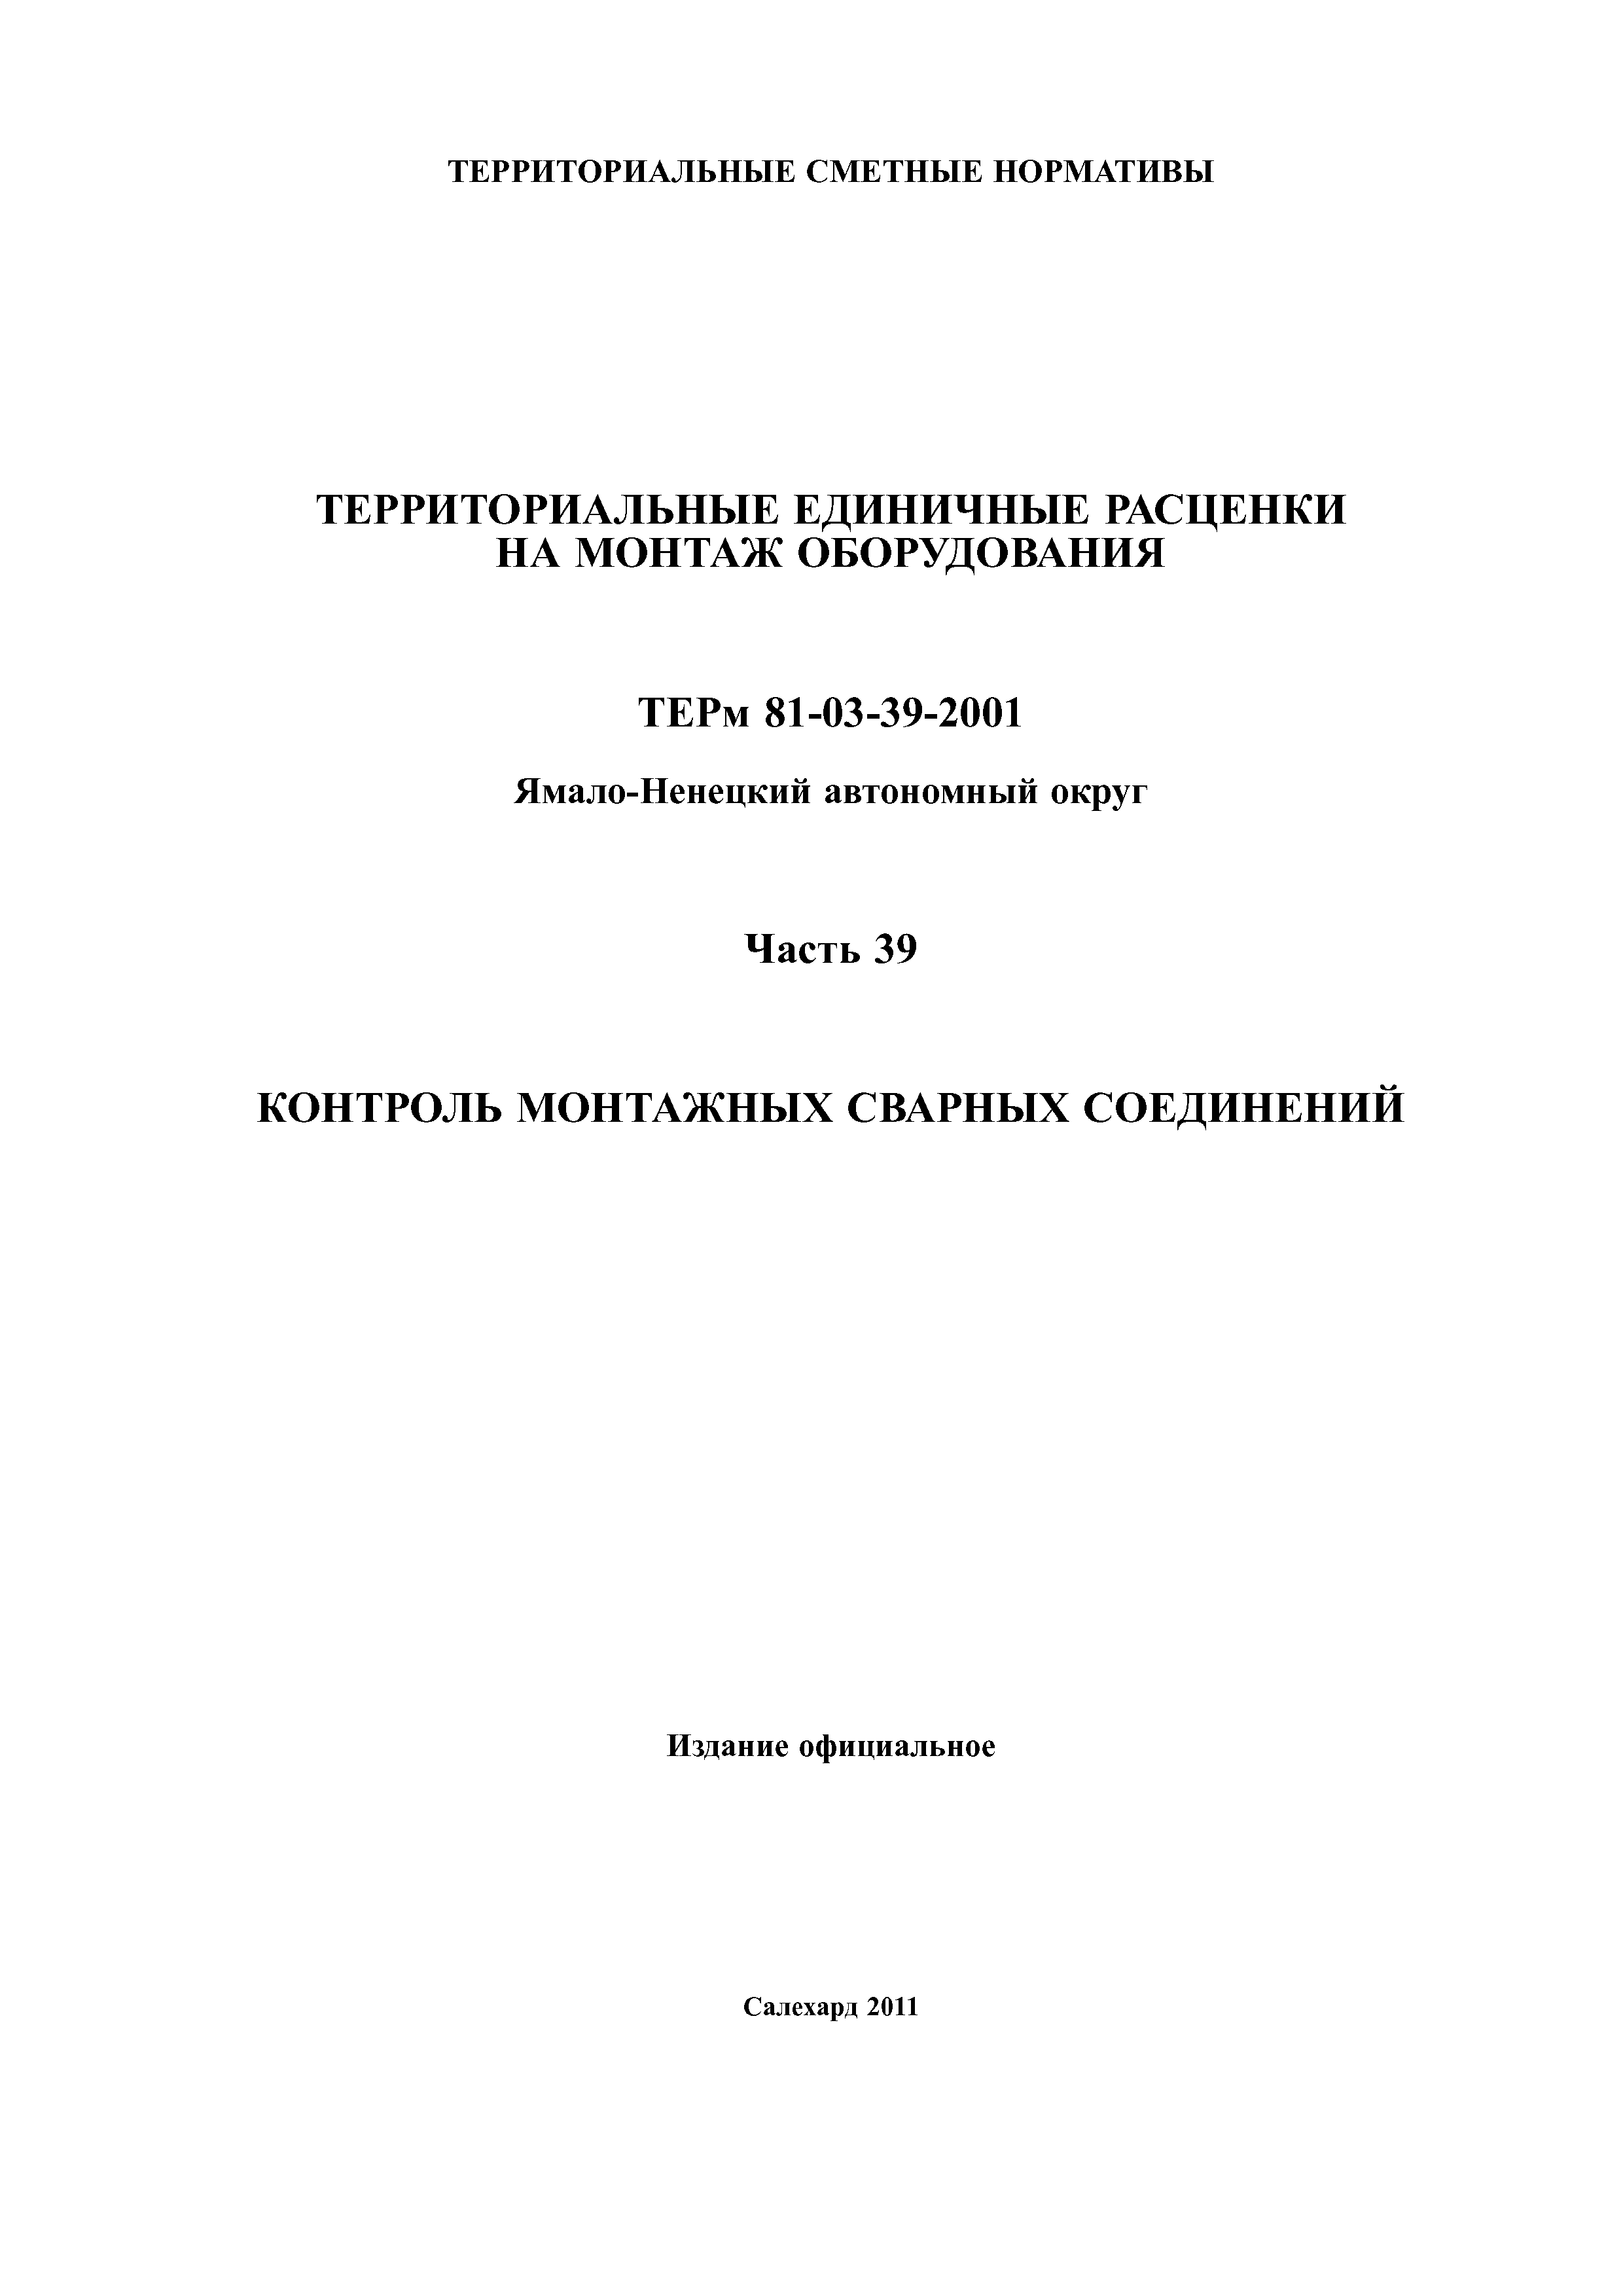 ТЕРм Ямало-Ненецкий автономный округ 39-2001